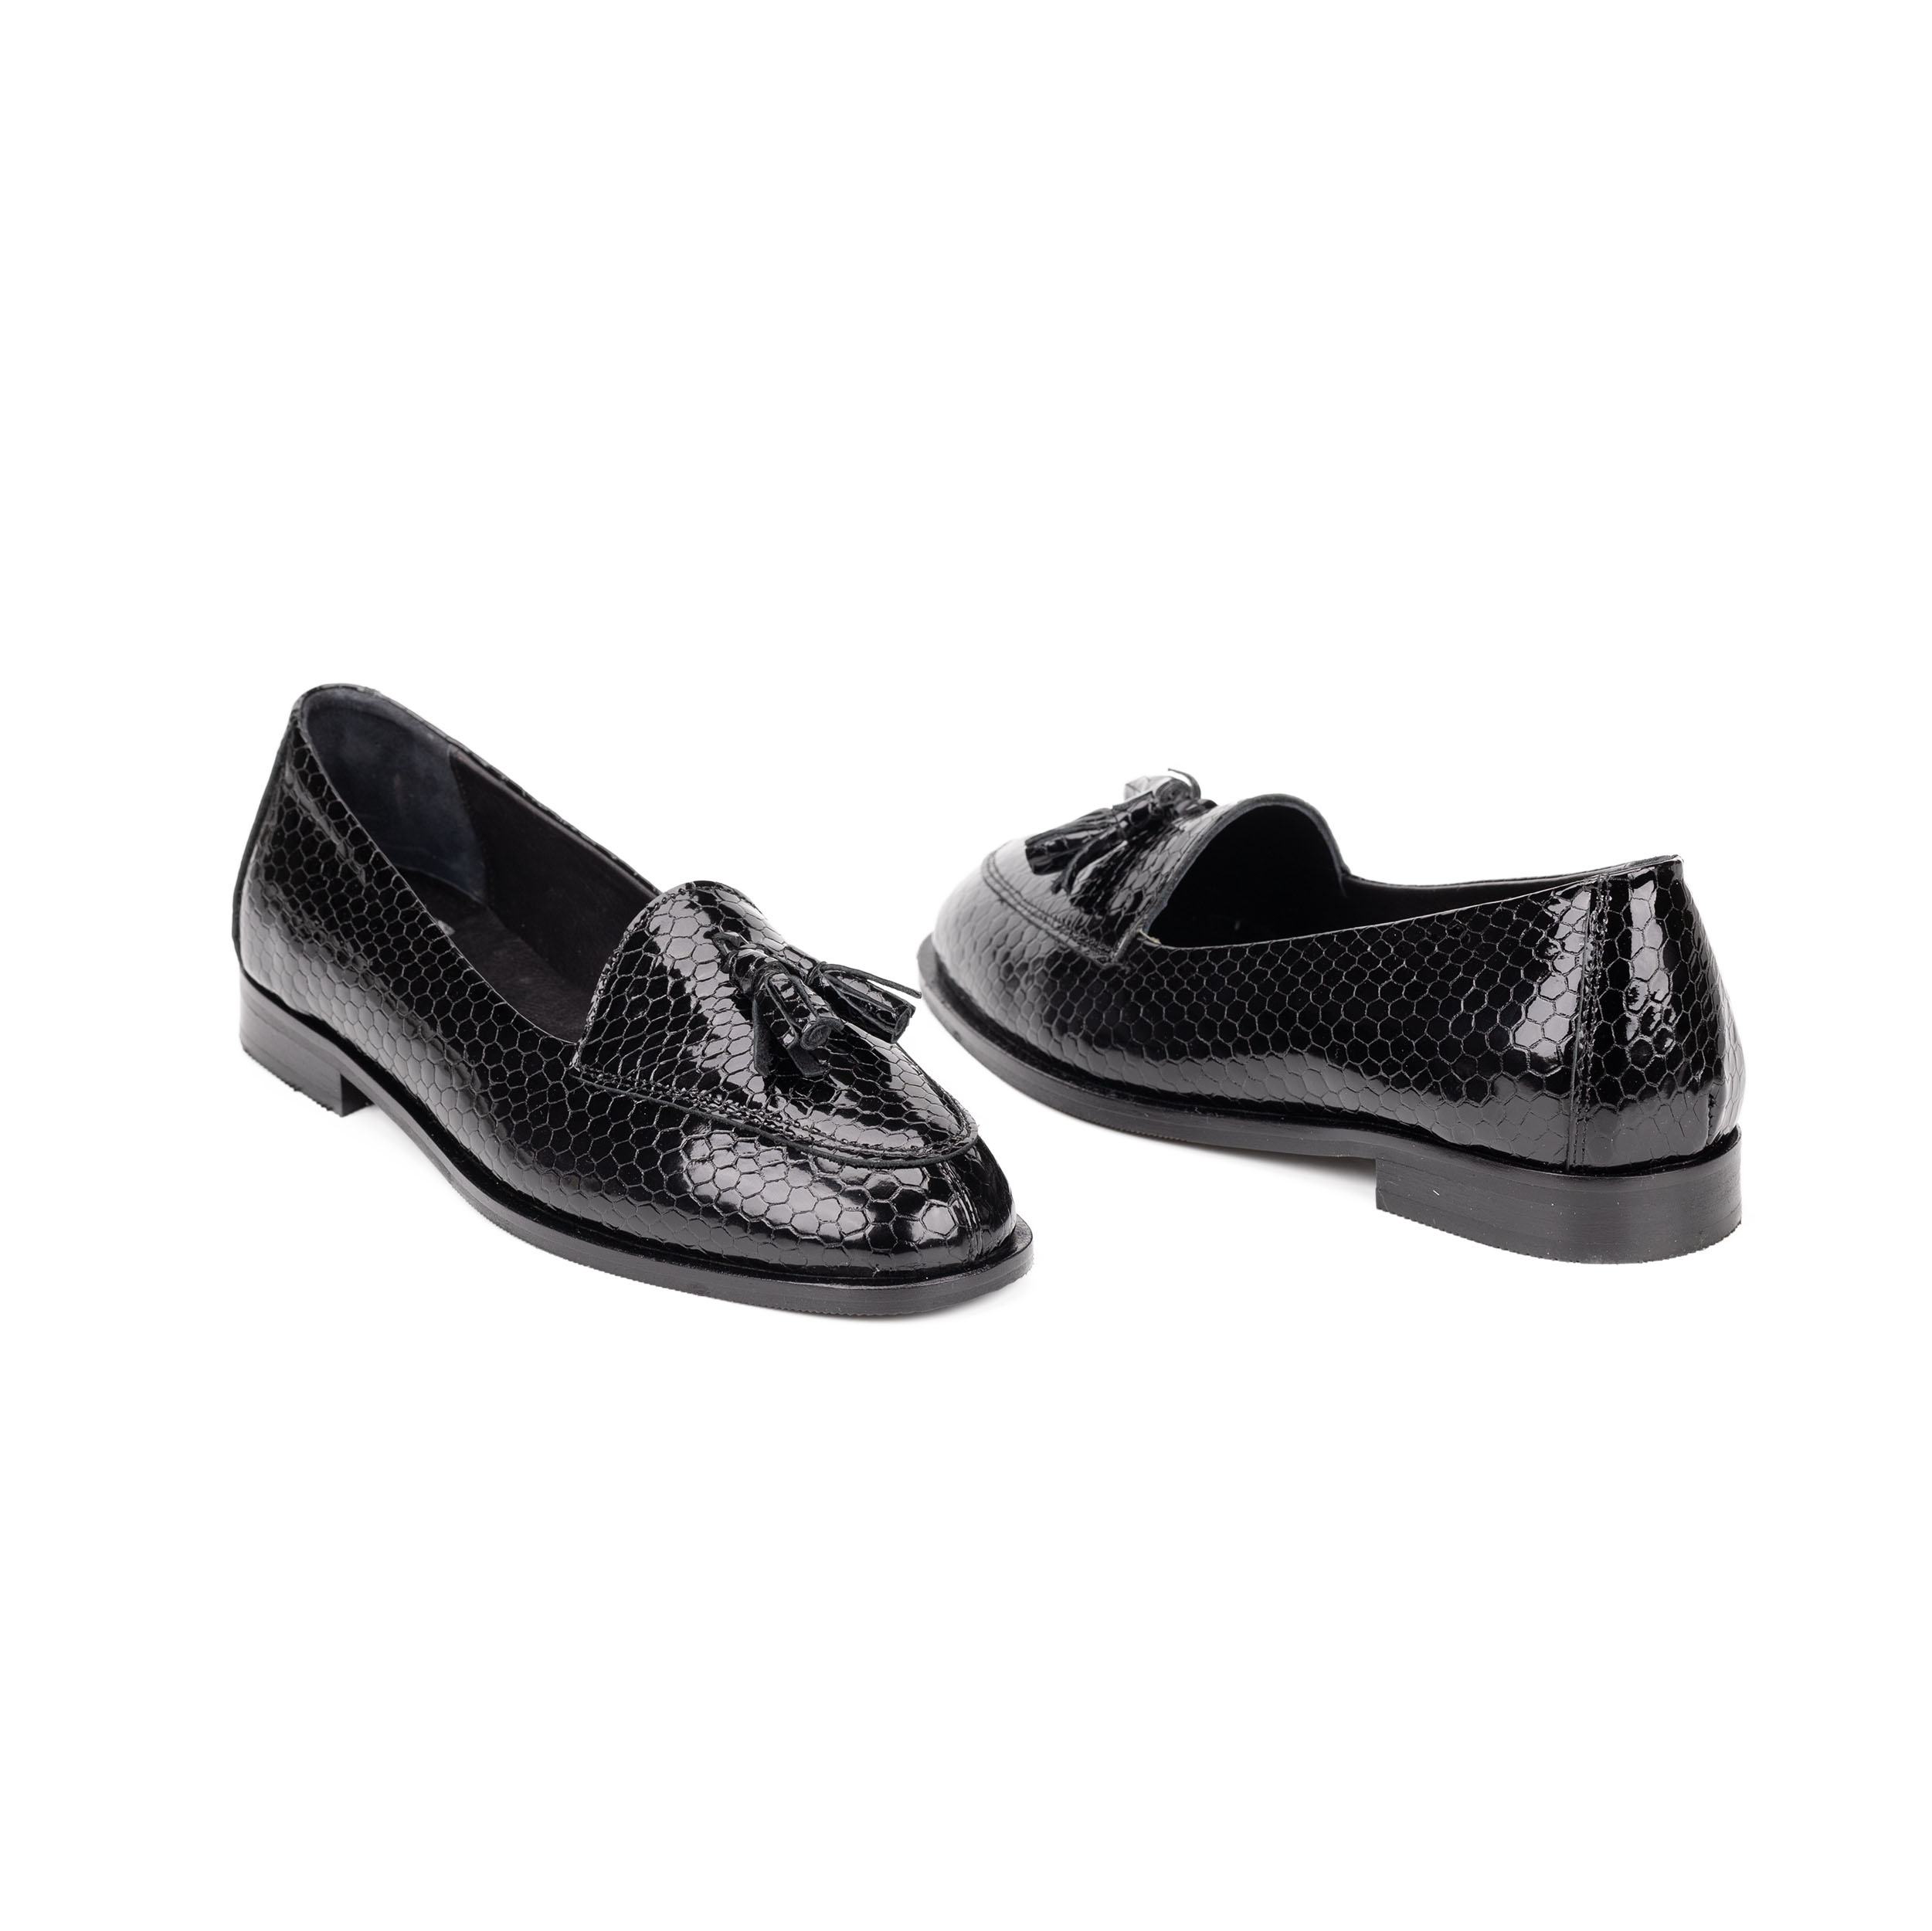 TwoEgoist Kadın Hakiki Deri Günlük Şık Klasik Loafer Ayakkabı, Renk: Rugan Siyah, Beden: 36